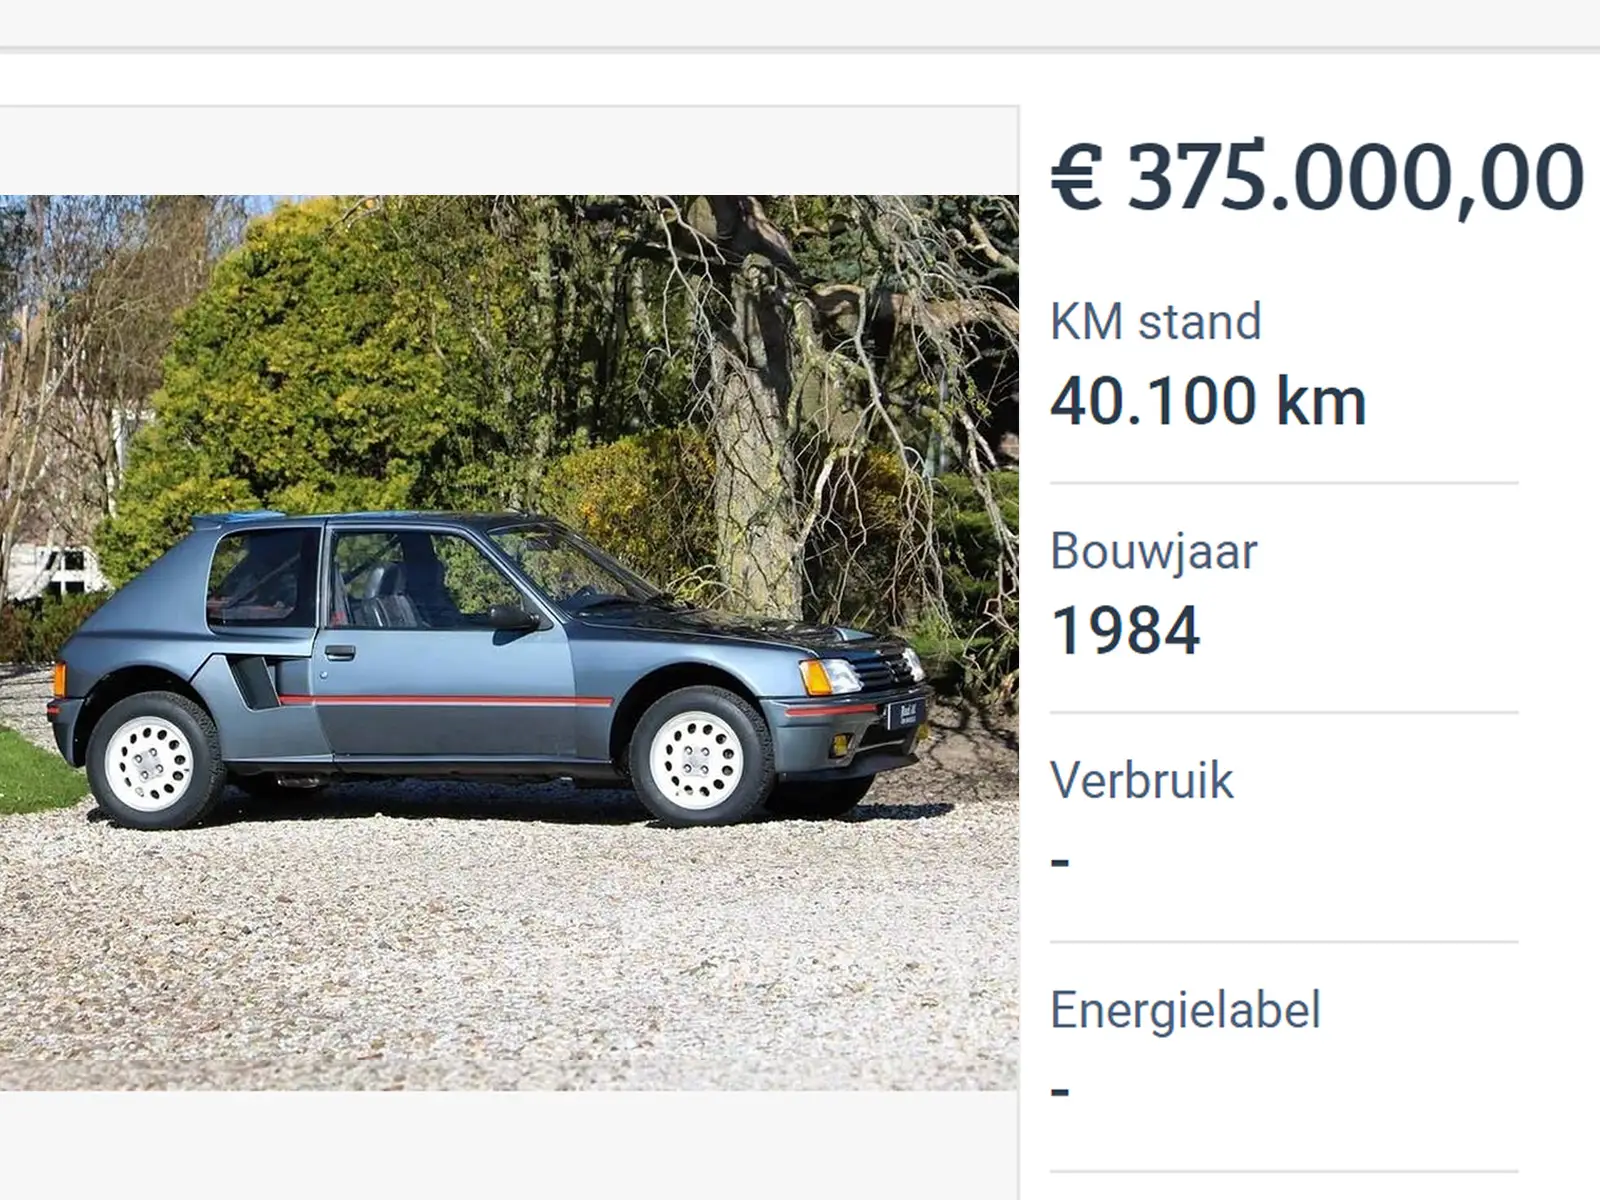 Этот Peugeot 205 на торговой площади стоит 375 000 евро, и это не сумасшедшая цена.